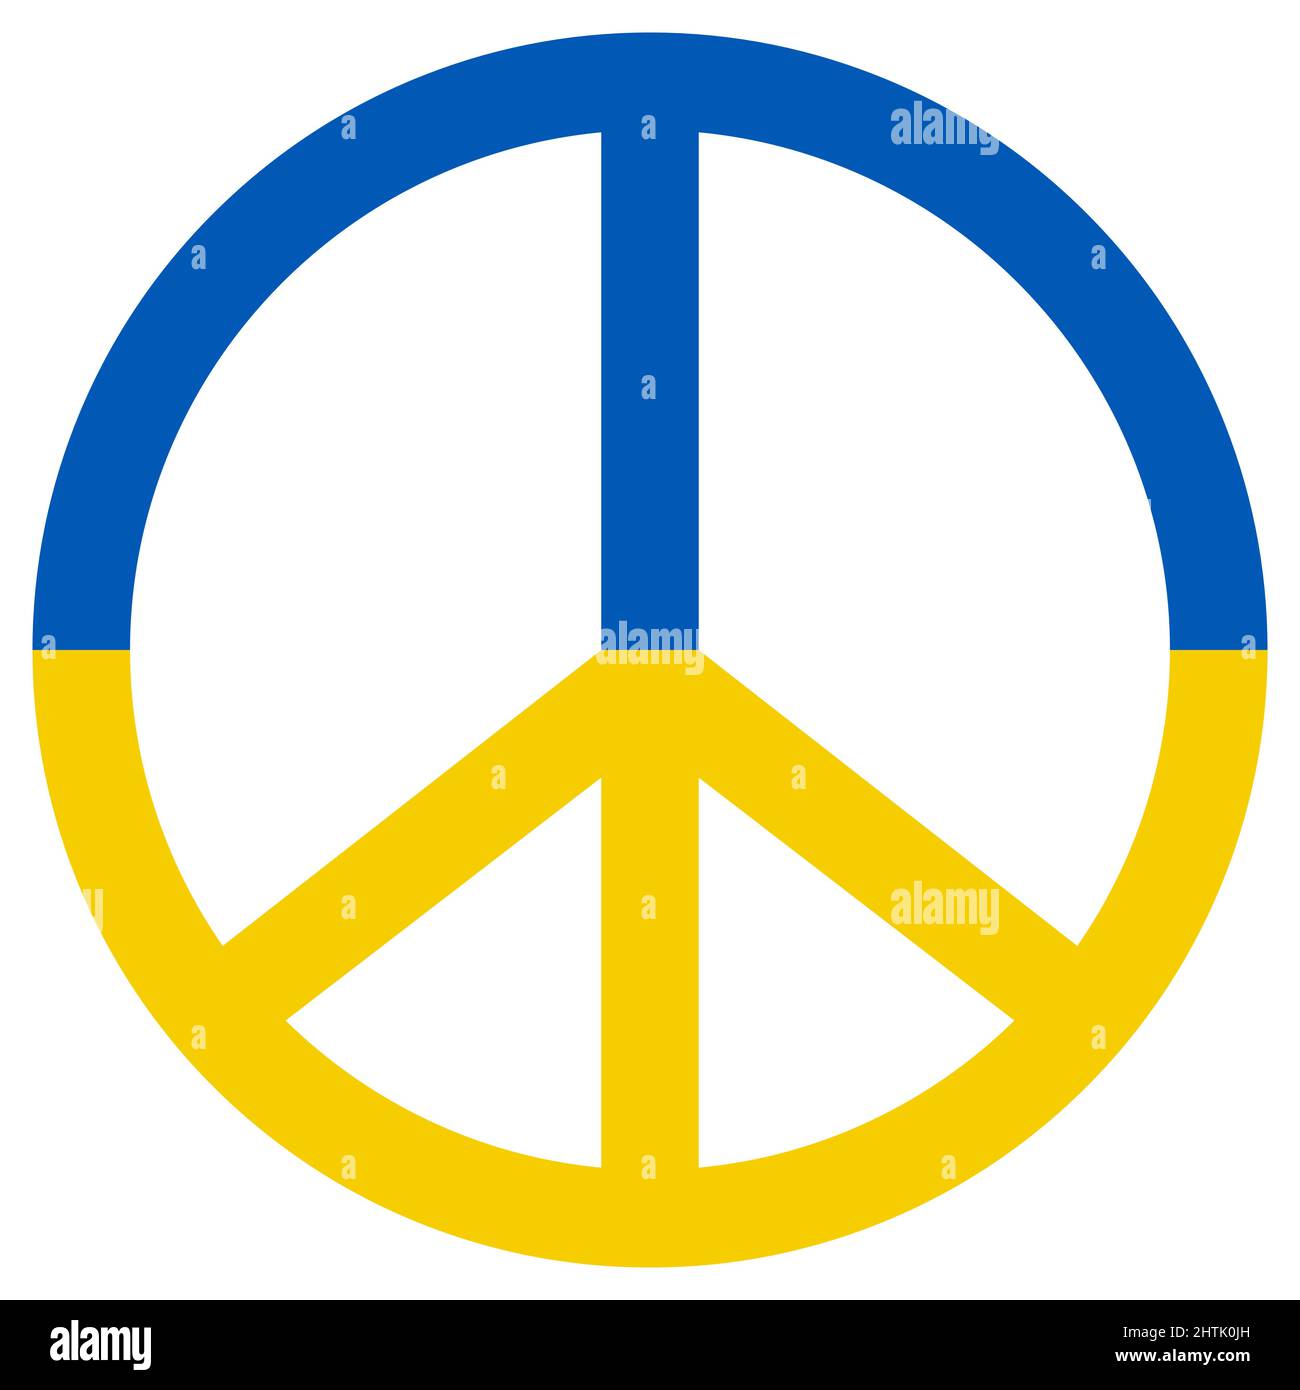 Signe de paix pacifique, drapeau de l'ukraine, couleur jaune bleu de l'anti-guerre, pacifique, conciliateur Illustration de Vecteur